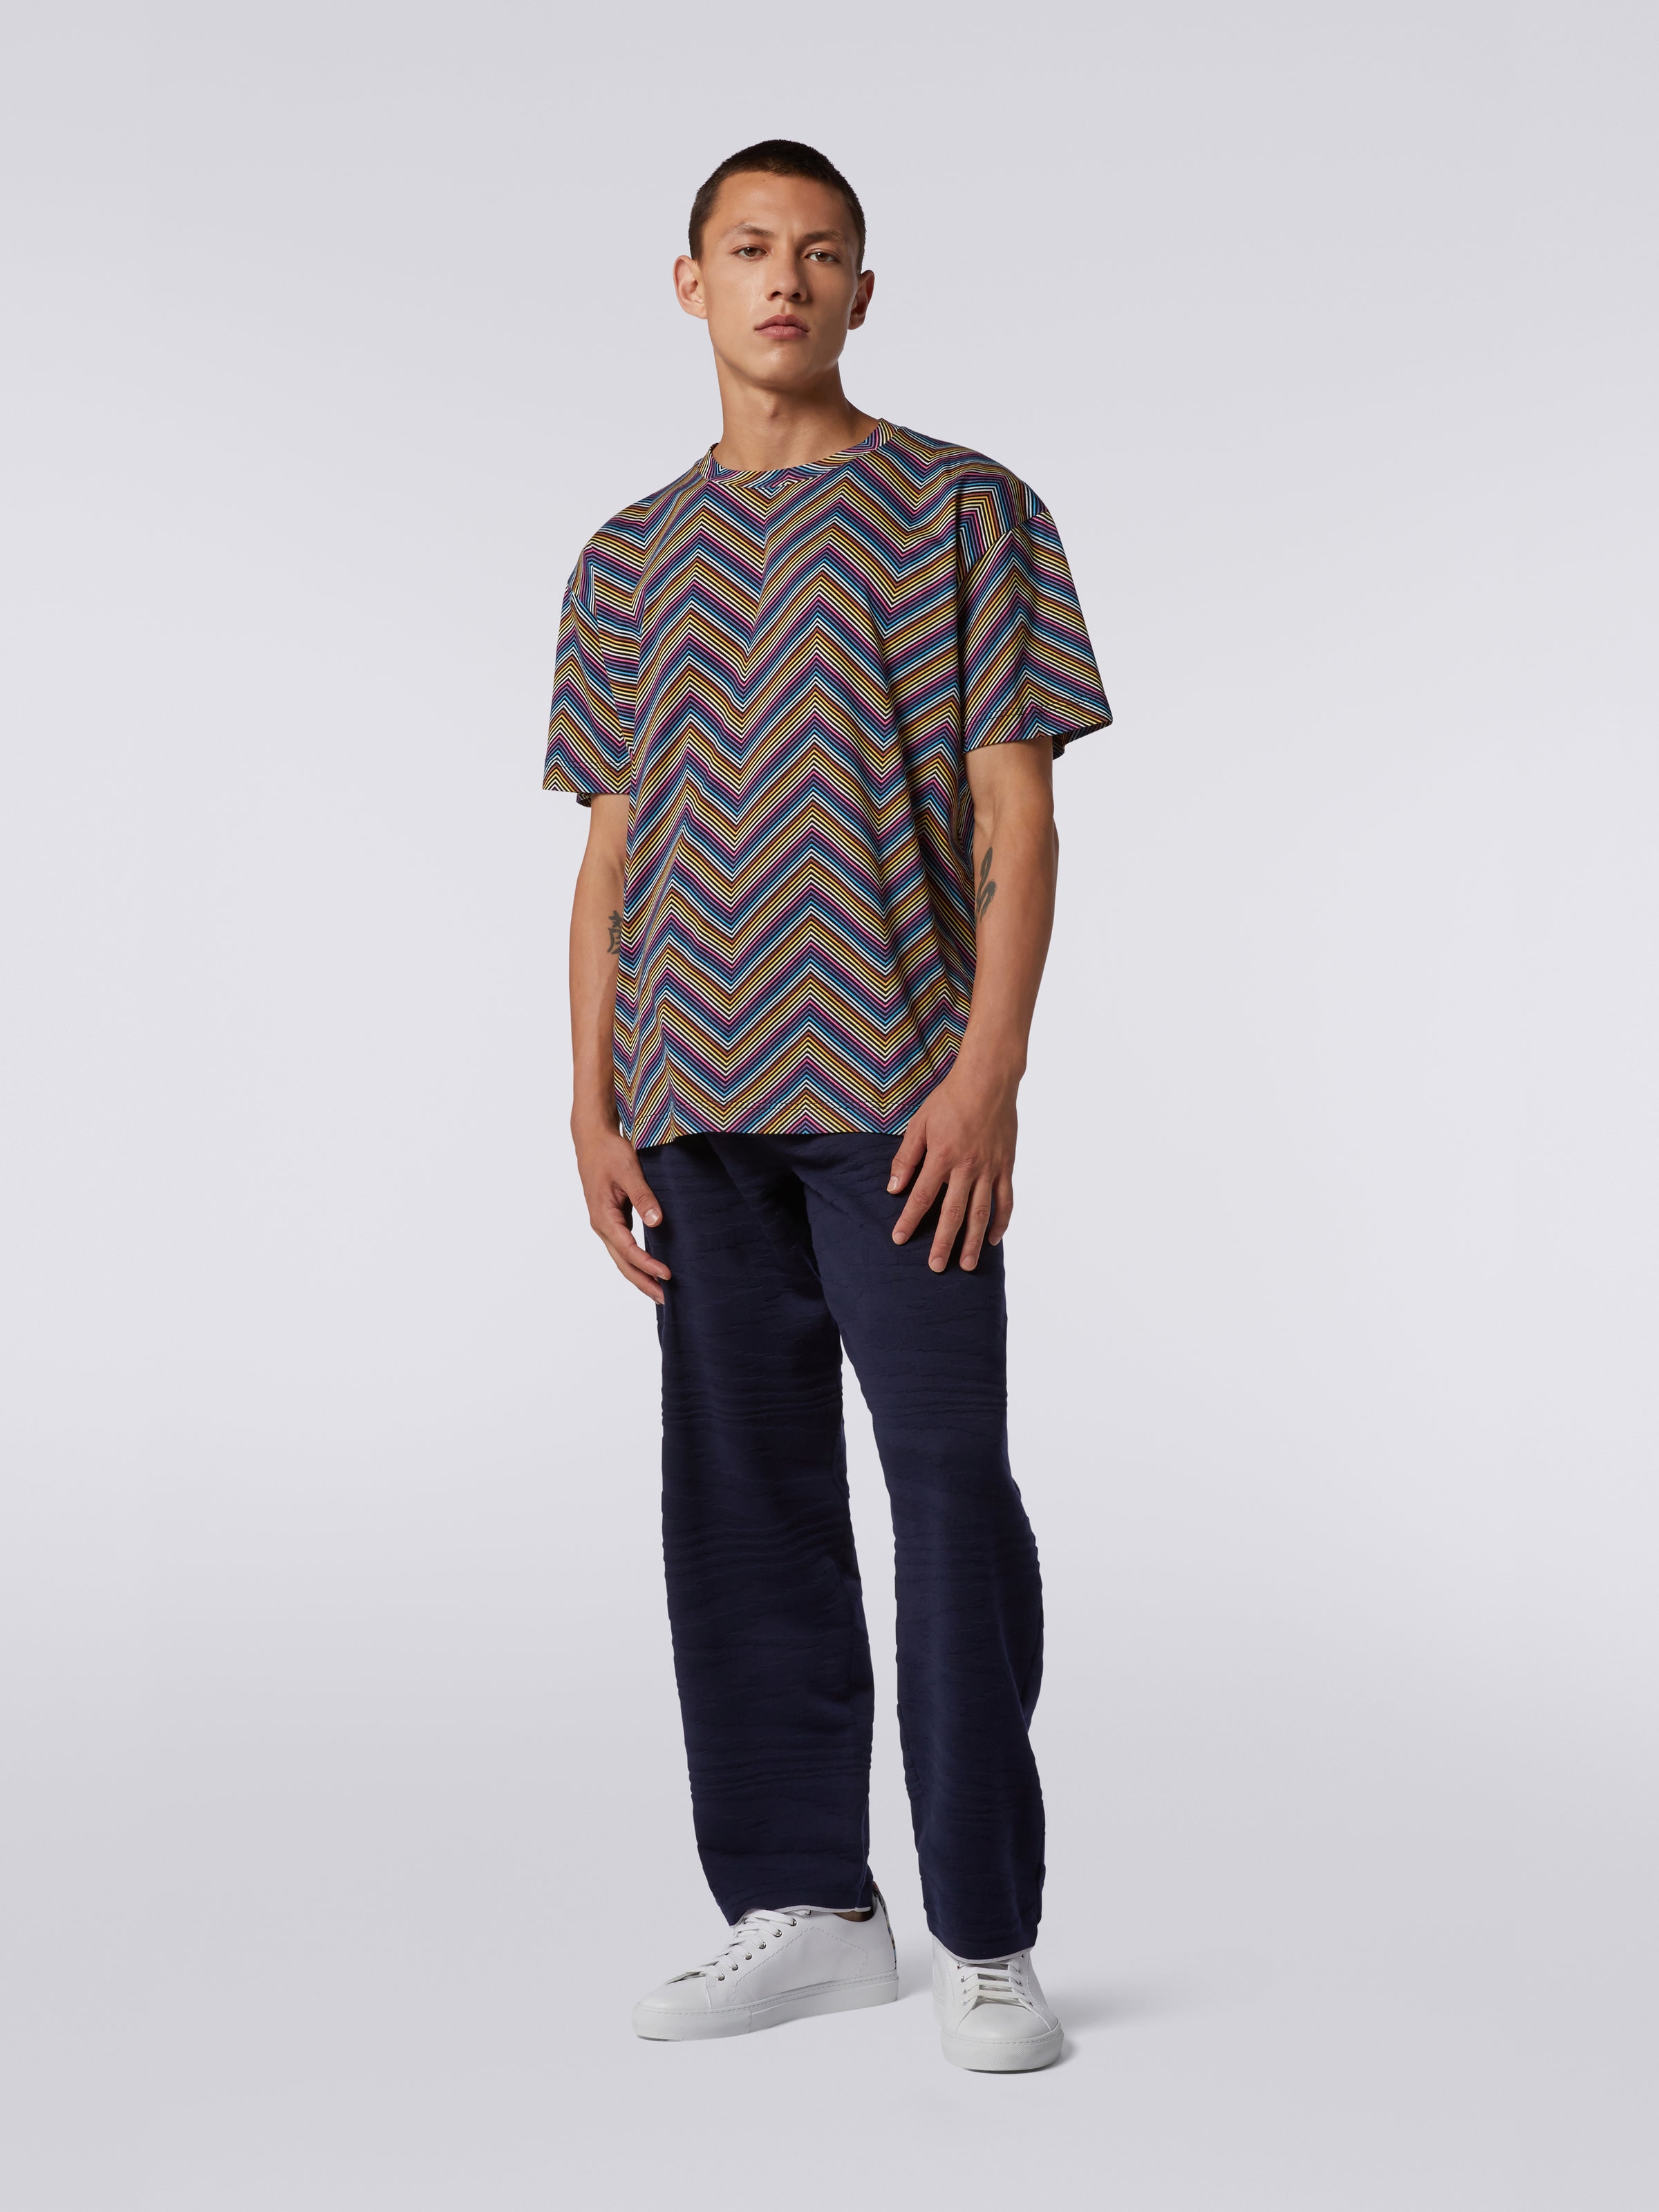 Camiseta de cuello redondo de algodón en zigzag integral, Multicolor  - 1